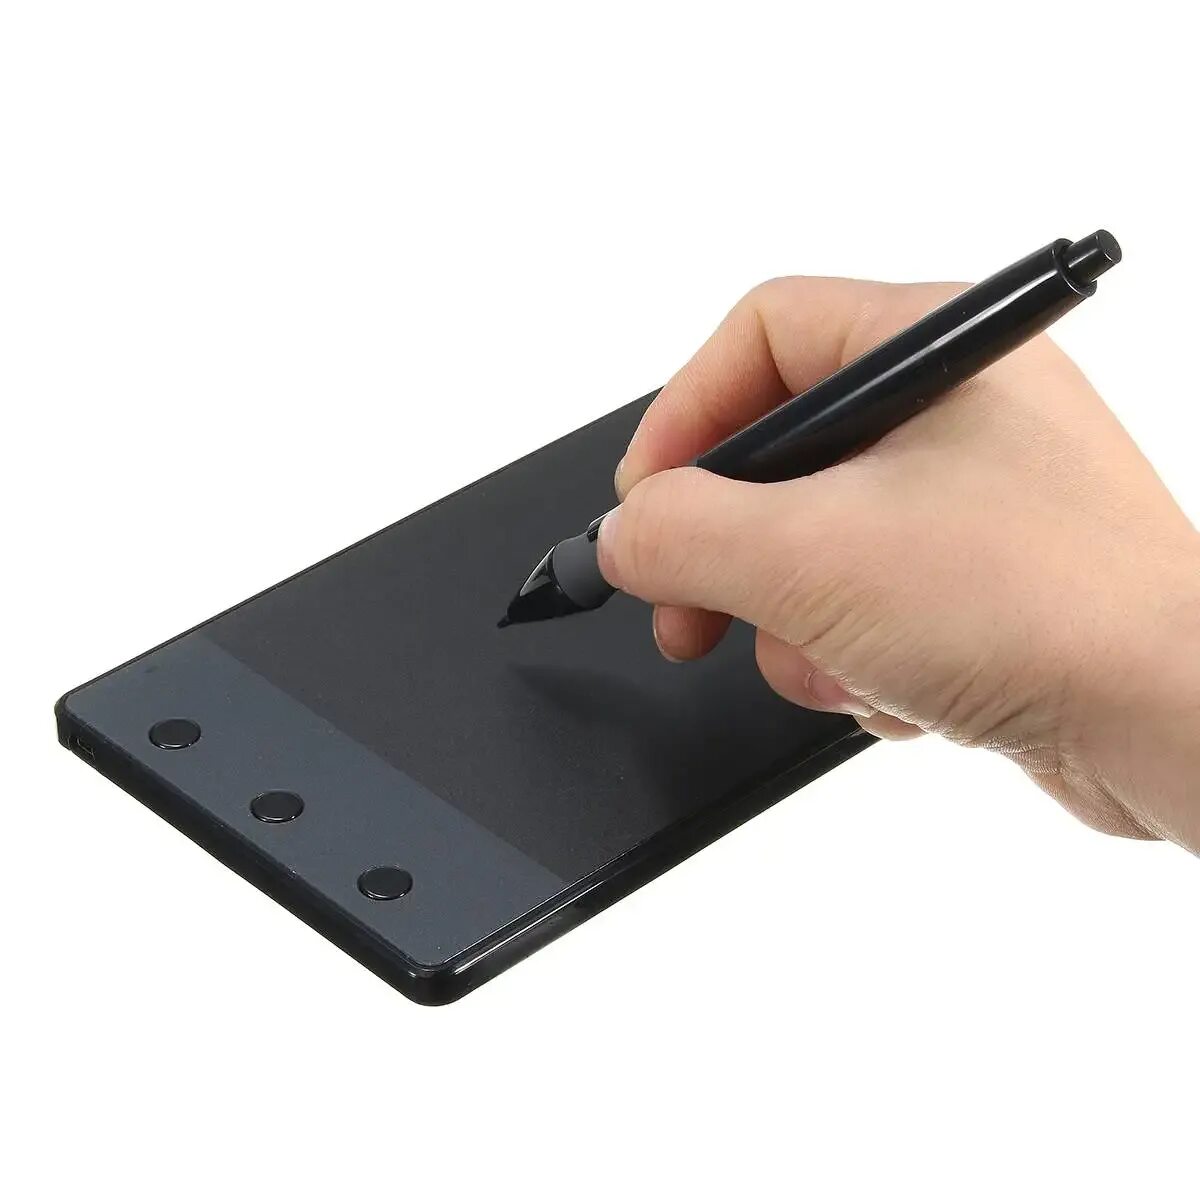 Графический планшет Huion h420. Графический планшет Huion 420. Huion h420 стилус. Huion USB Pen Tablet.